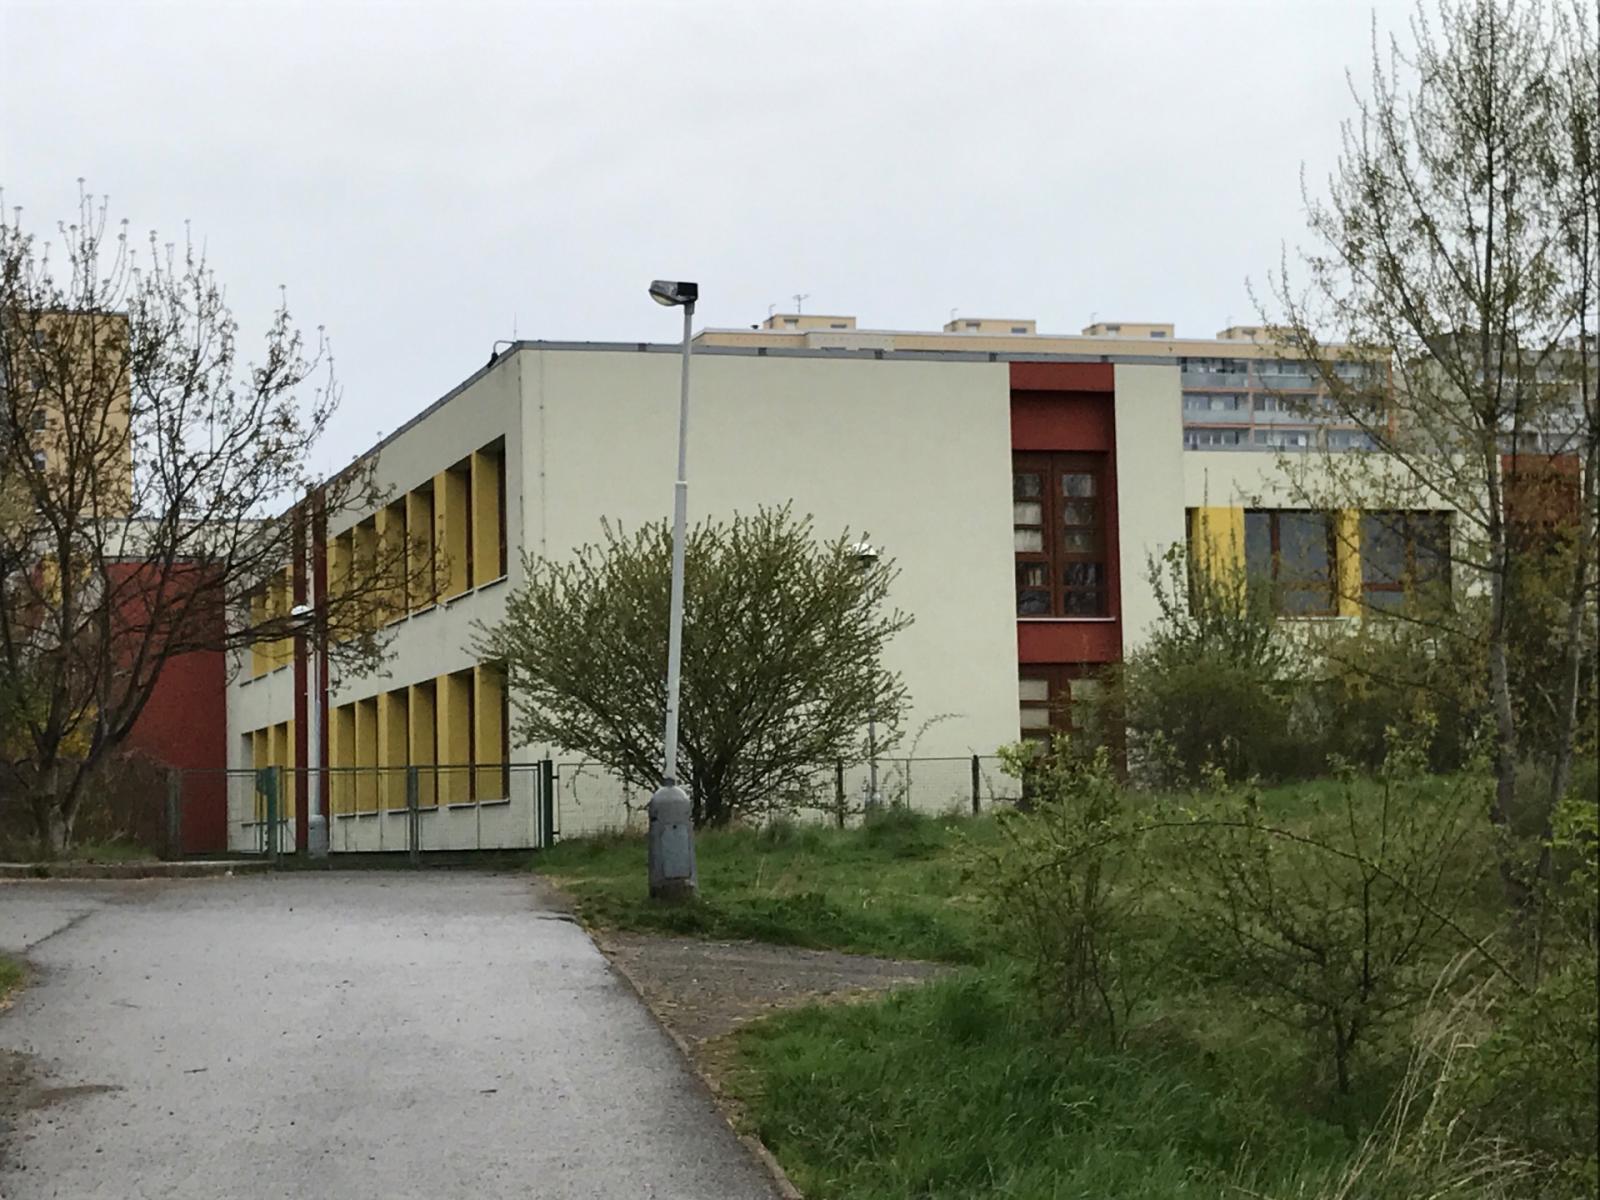 Základní škola Klausova, Praha 13